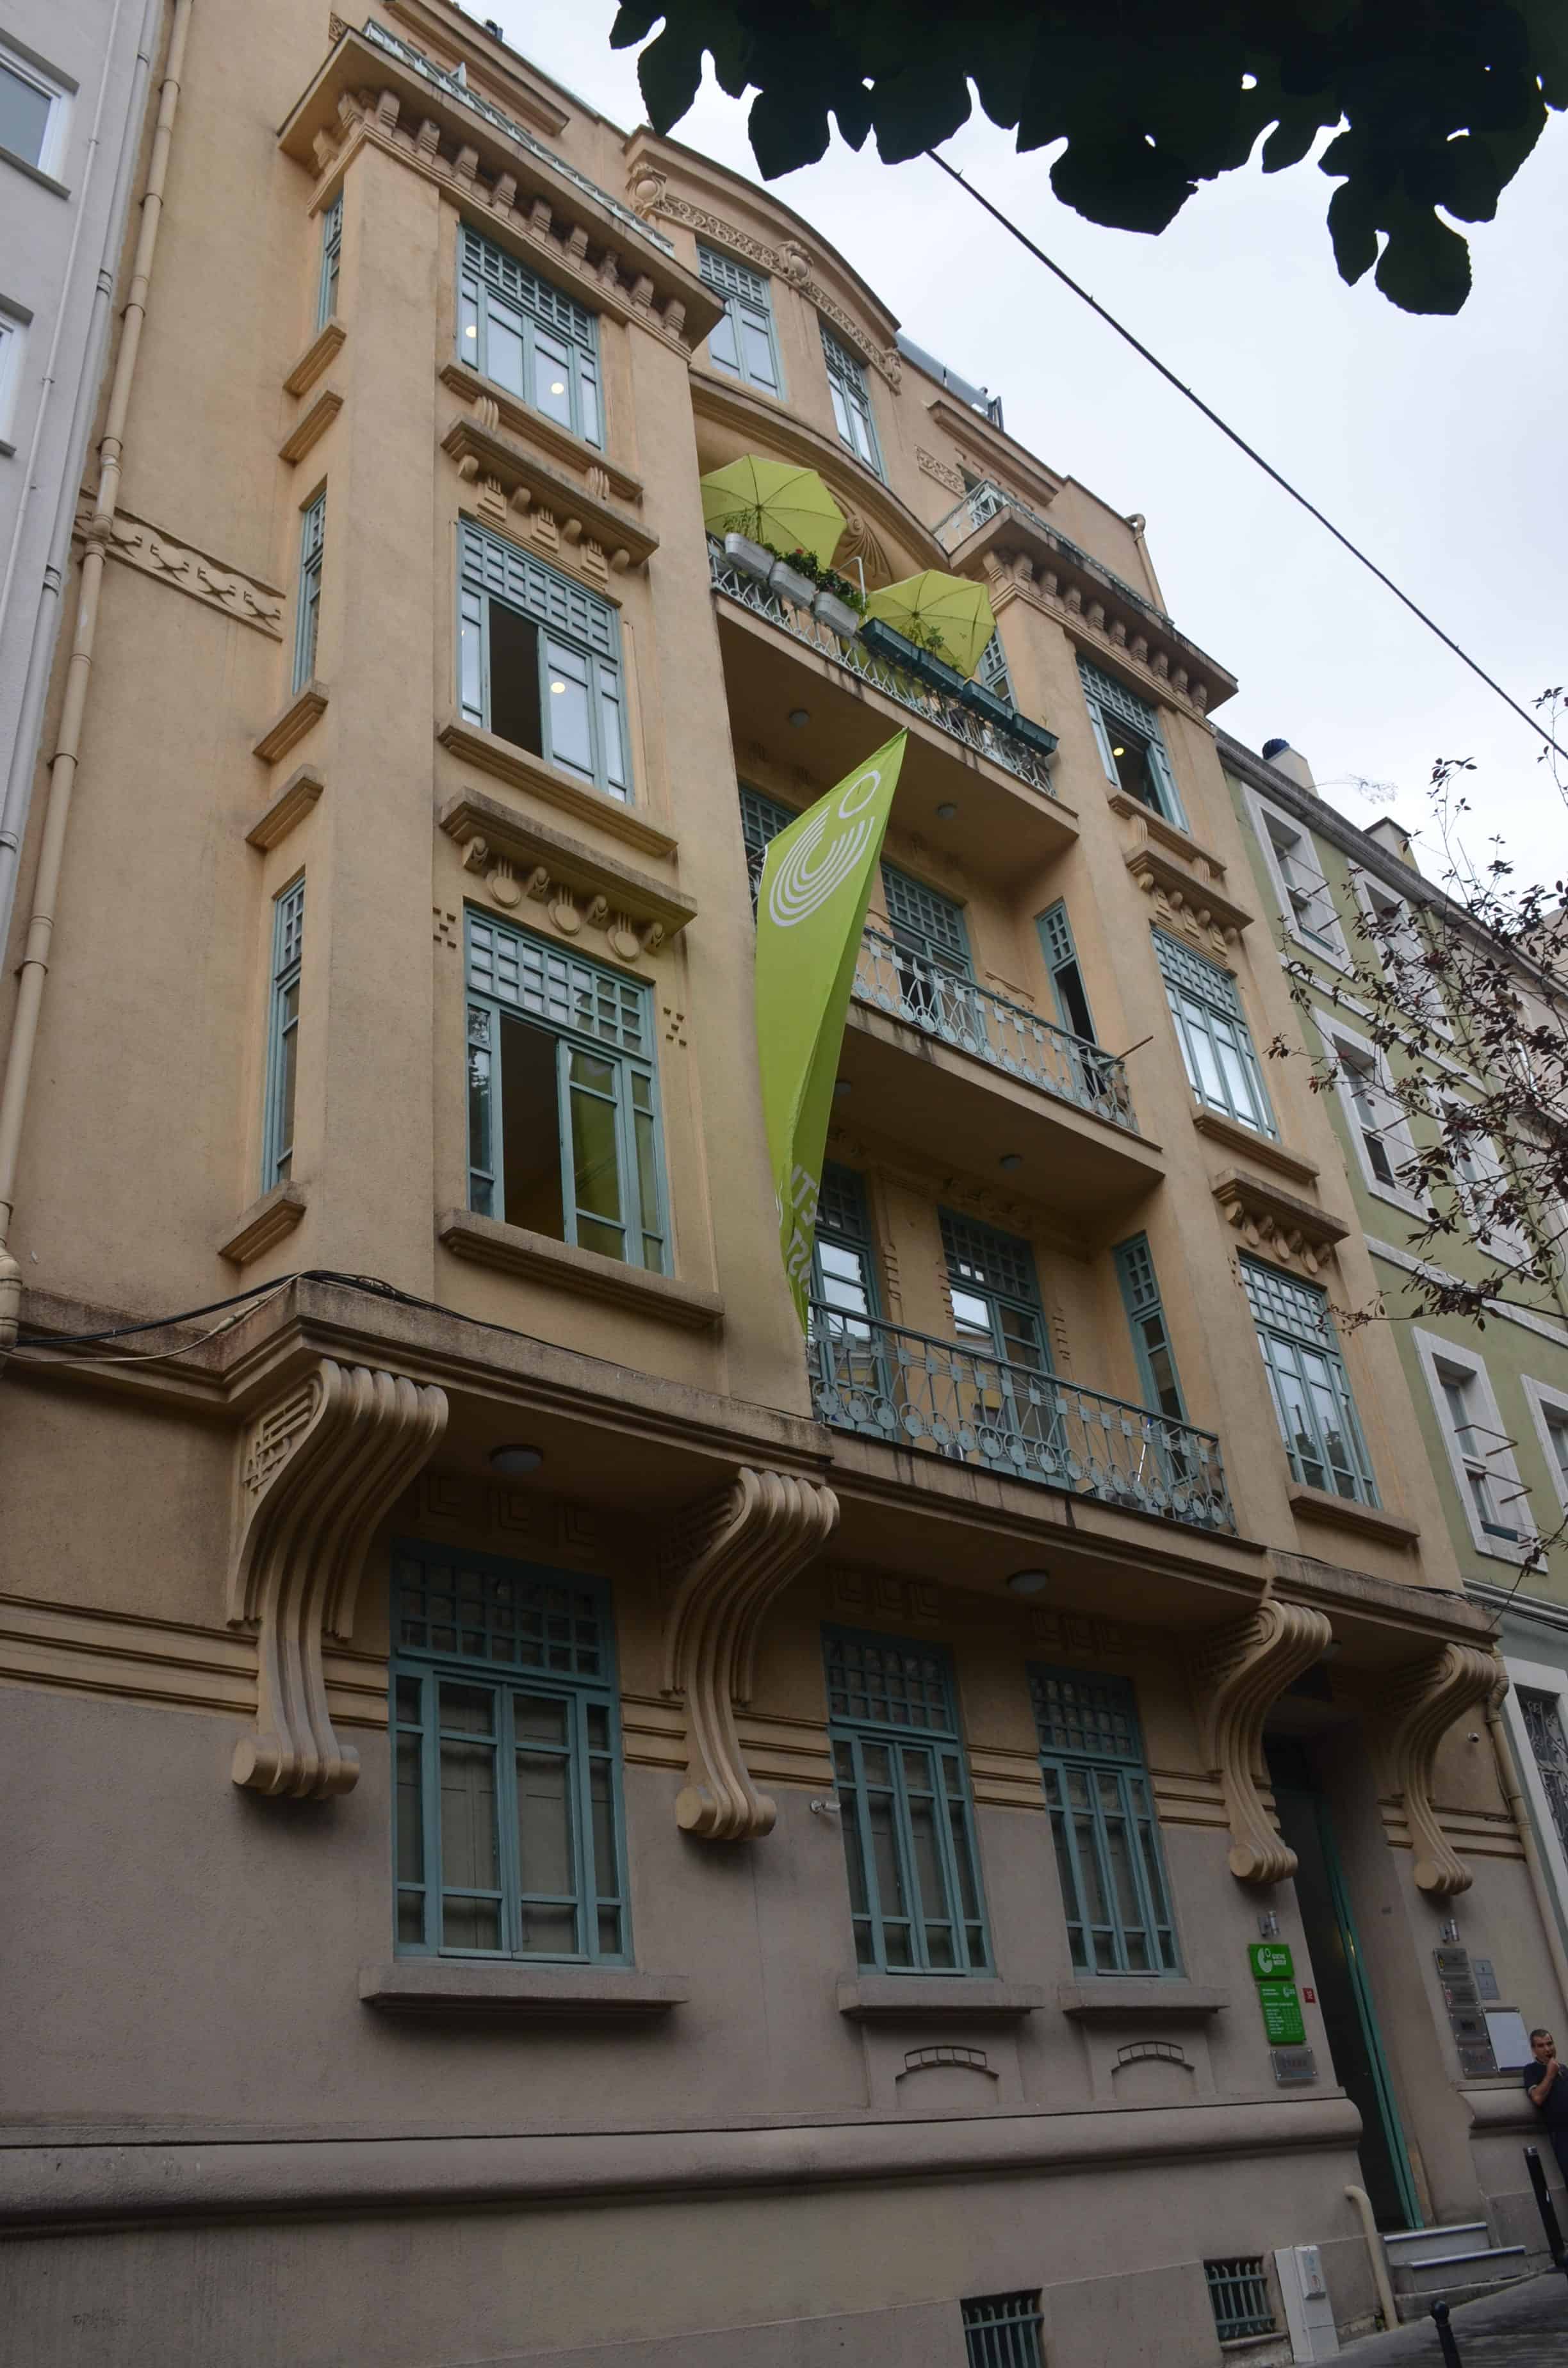 Goethe Institute on Yeni Çarşı Street in Istanbul, Turkey